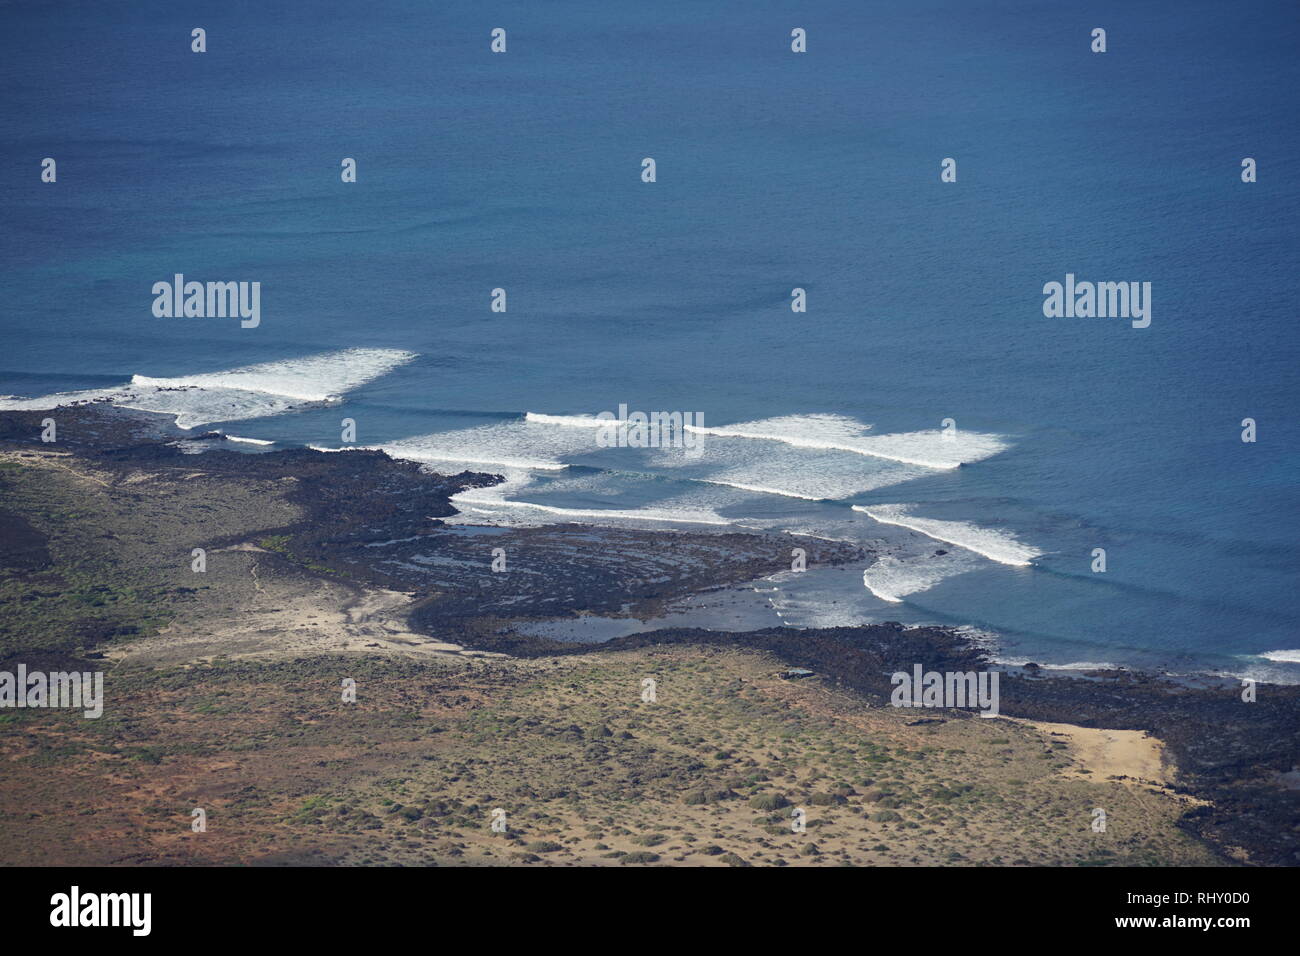 Risco de Famara, Blick vom Mirador de Rio, Küste, Lanzarote, Kanarische Inseln, Spanien Banque D'Images